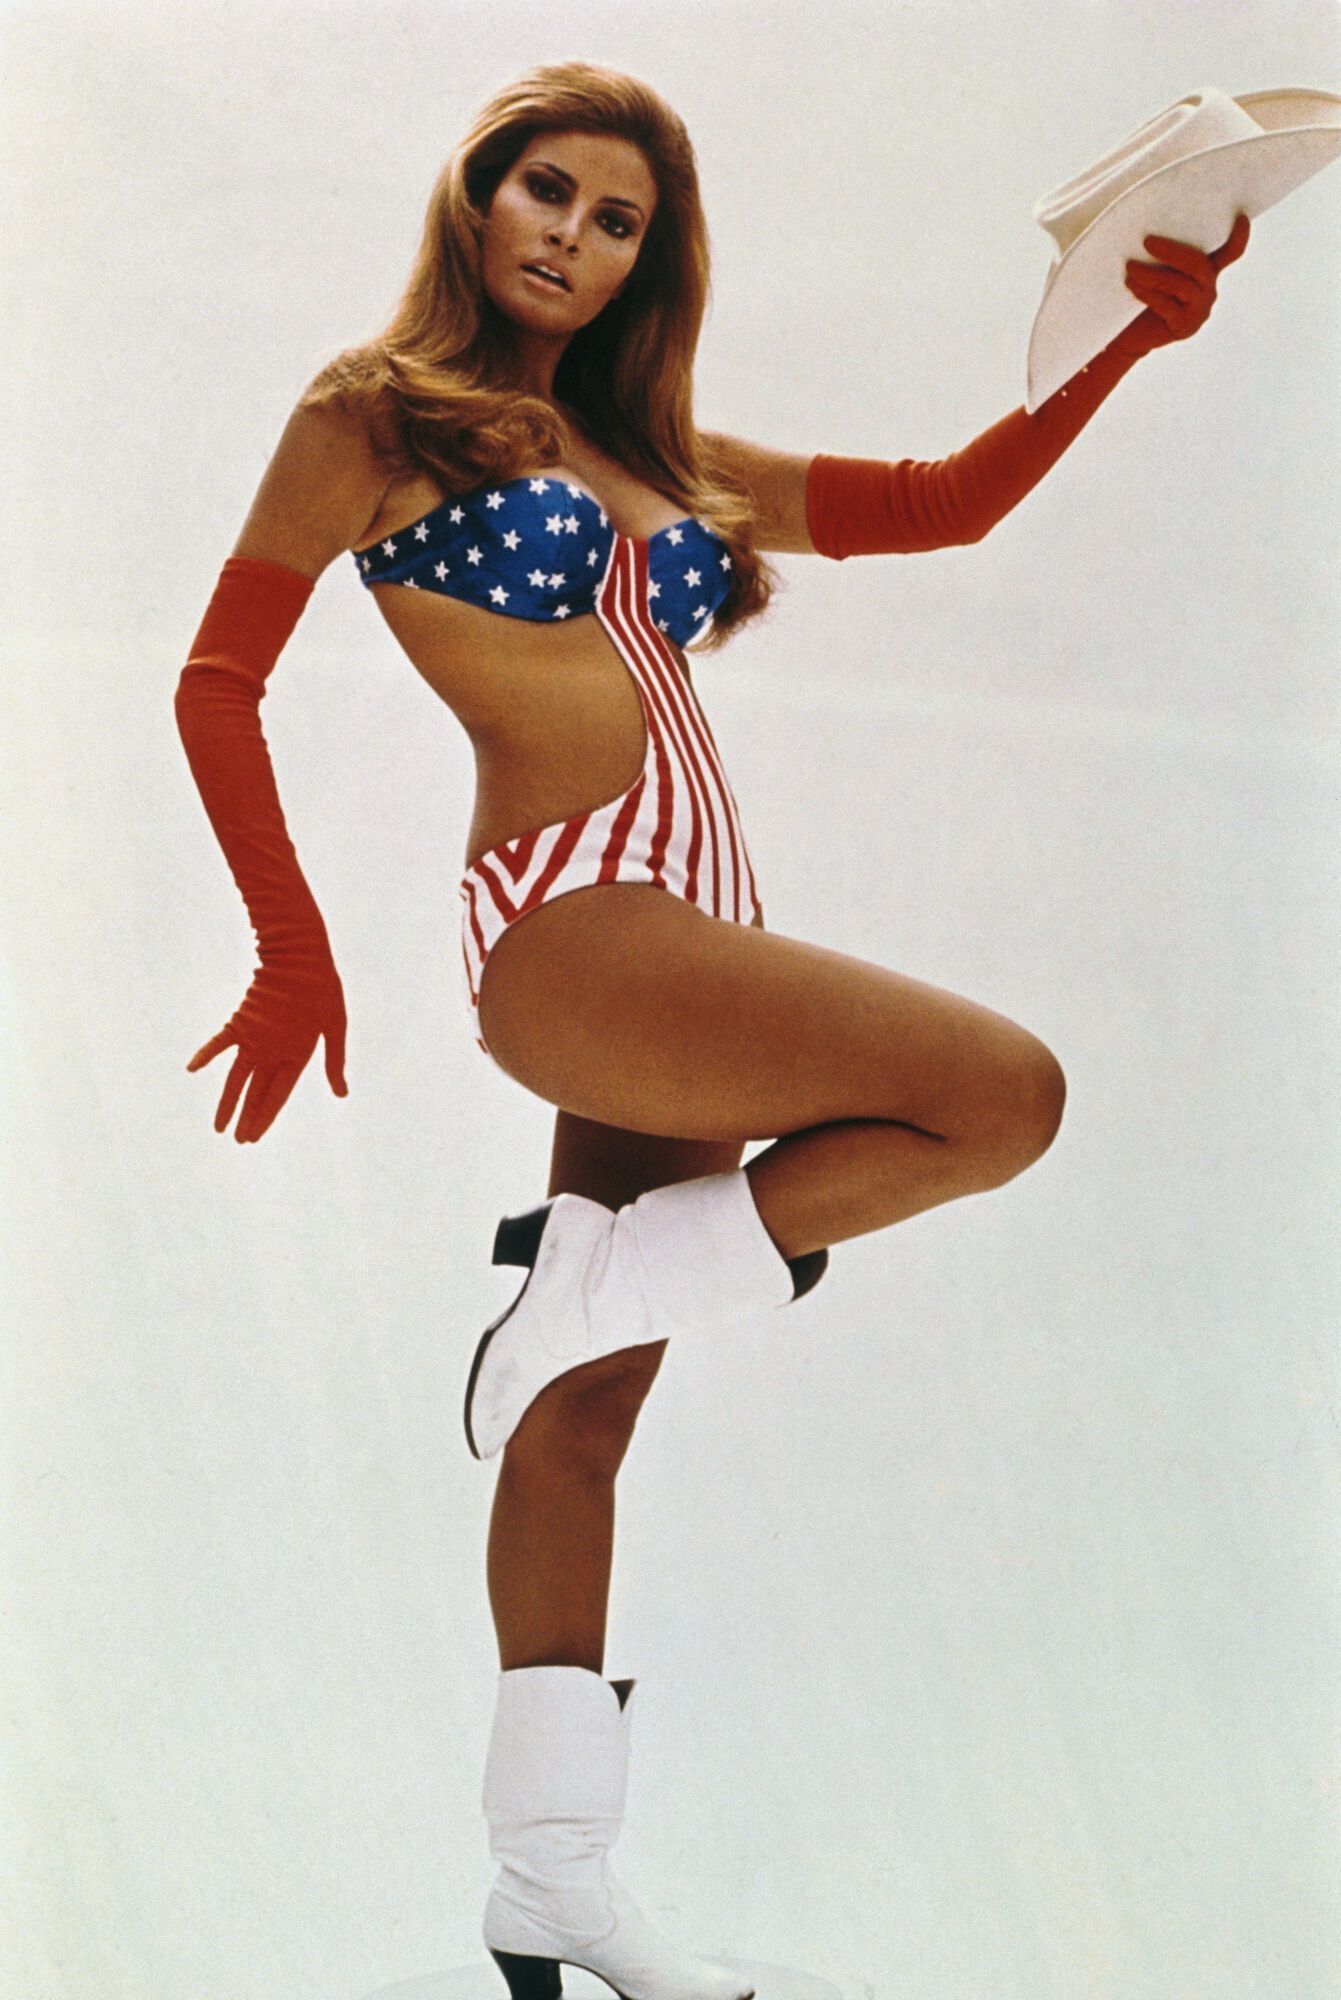 Умерла секс-символ 70-х Ракель Уэлч. Самые горячие фото звезды Playboy